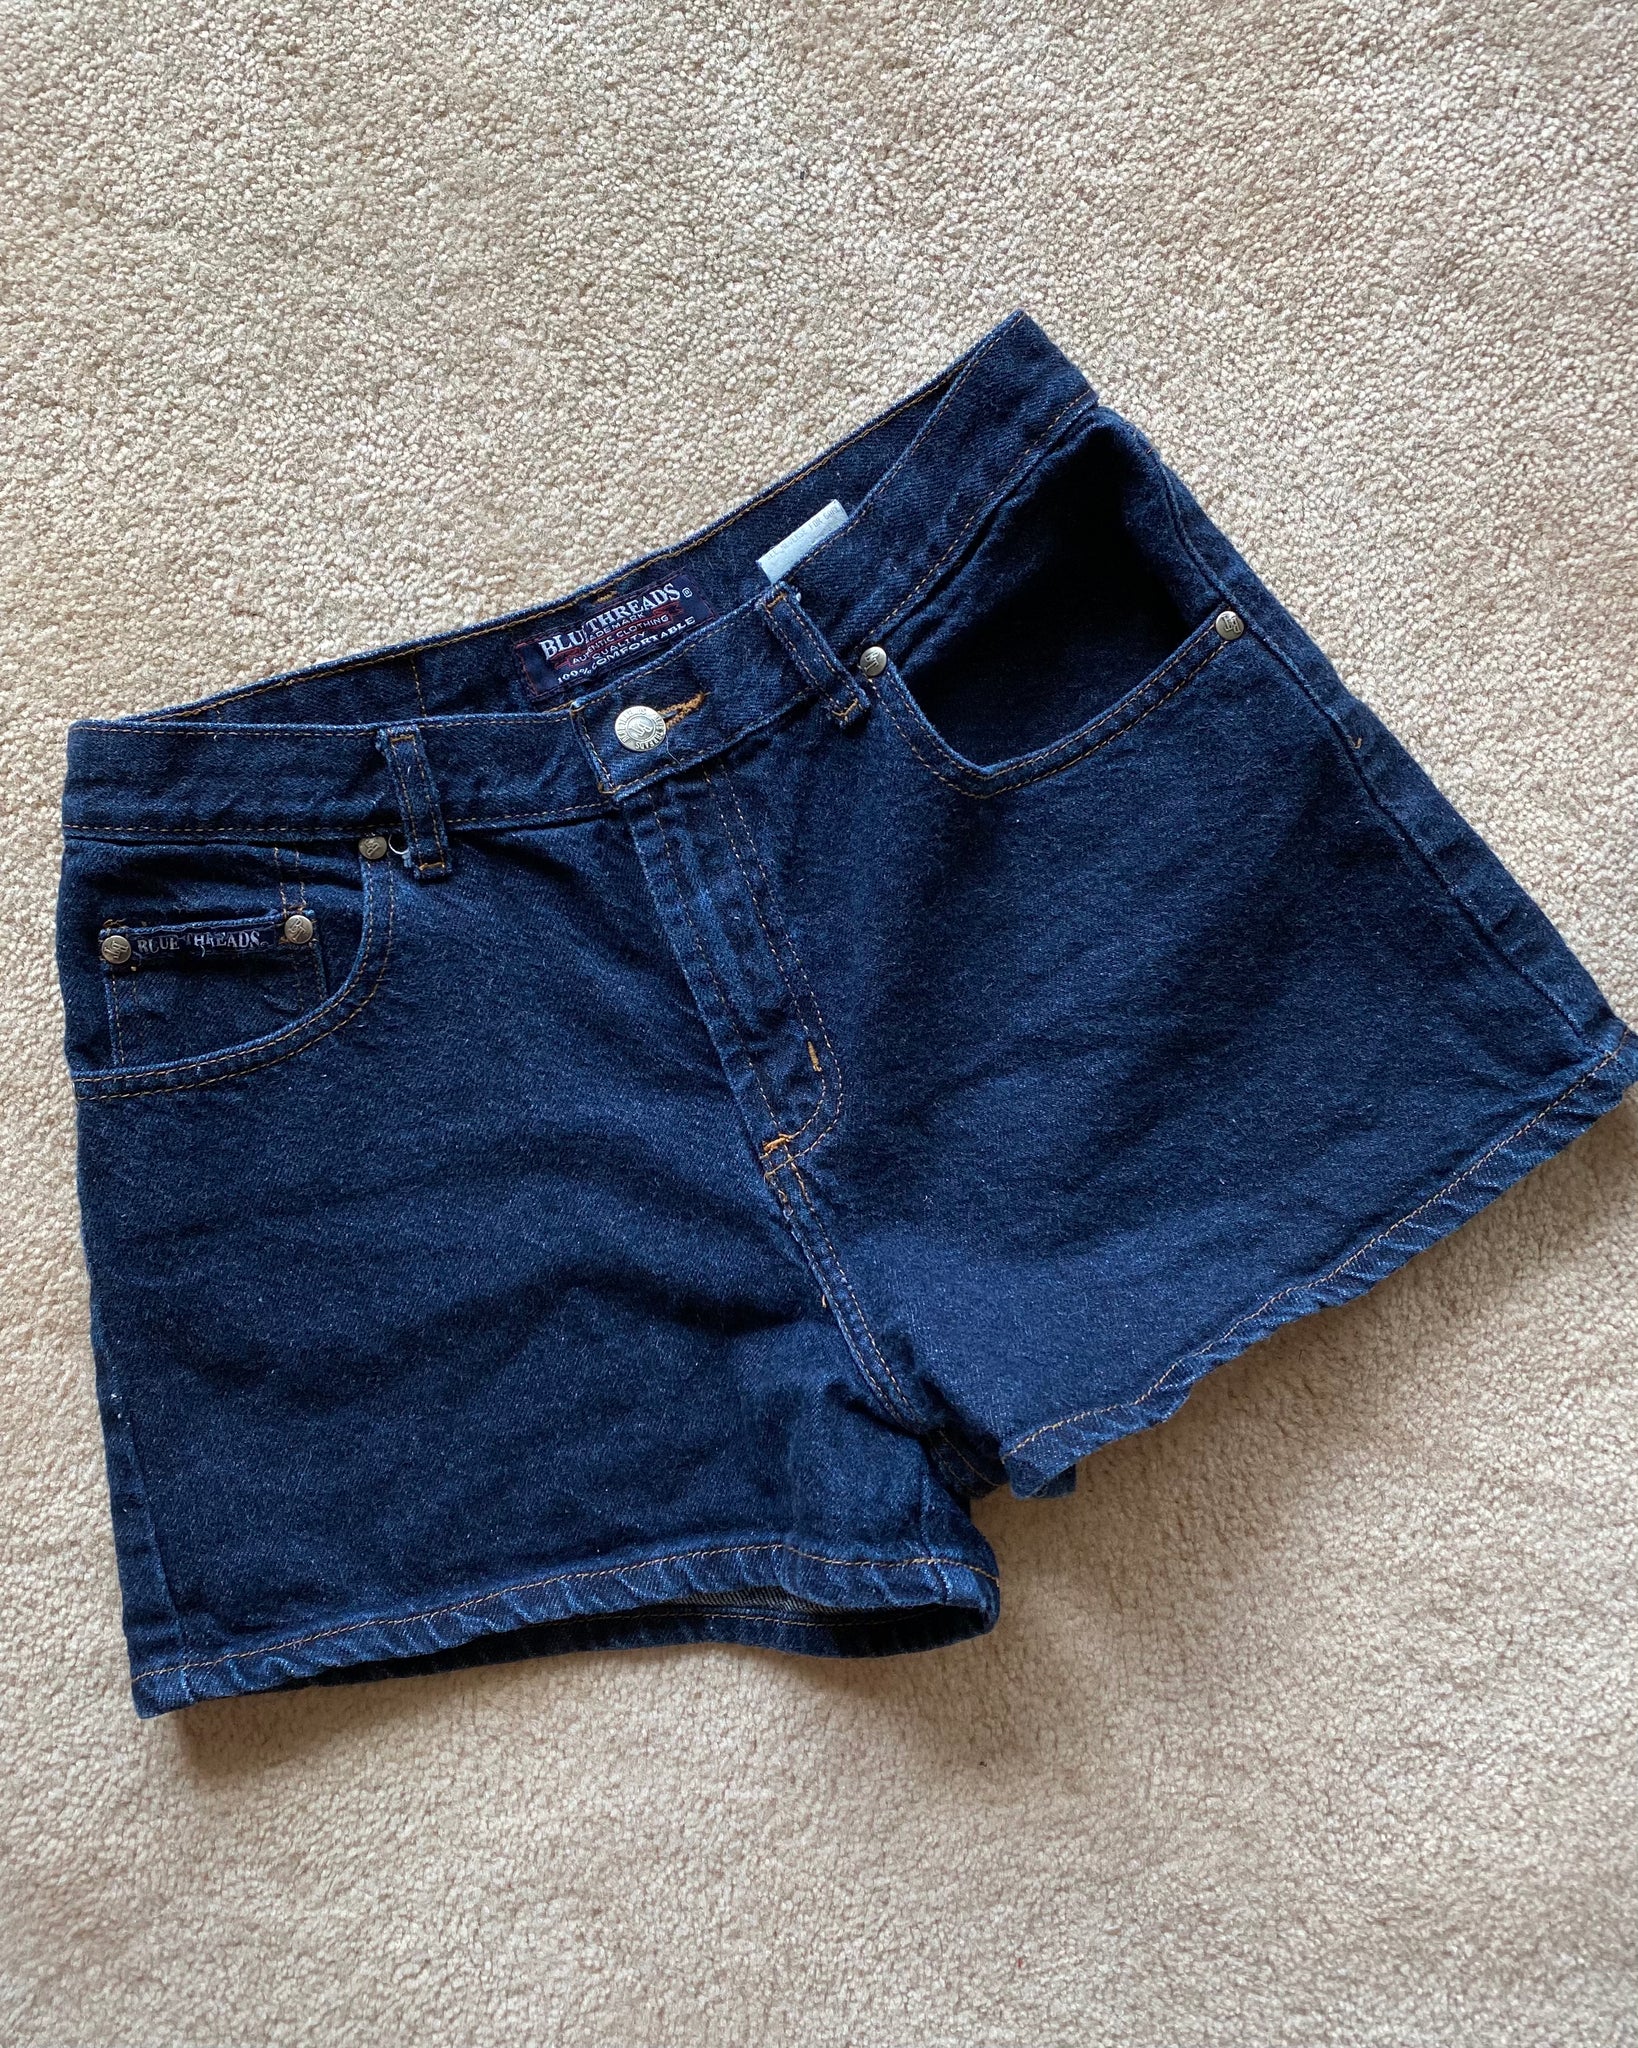 90s Dark Wash Cotton Denim Shorts (fits 4/6)